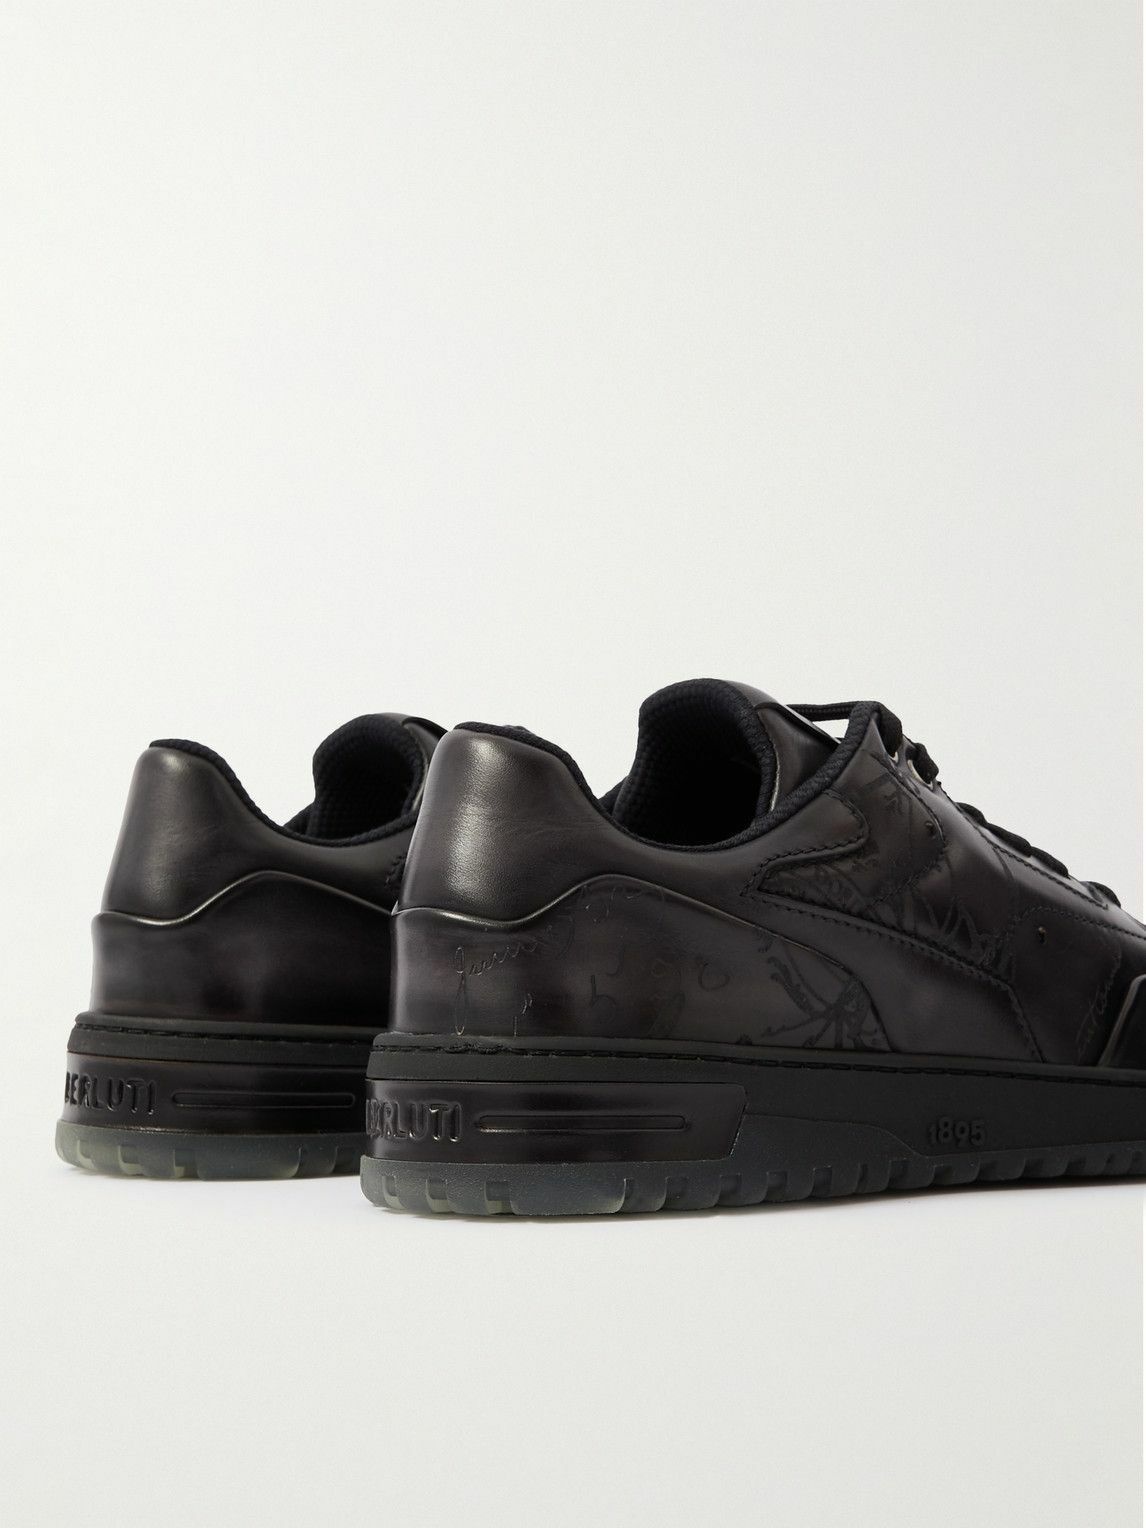 Berluti - Playoff Scritto Venezia Leather Sneakers - Black Berluti